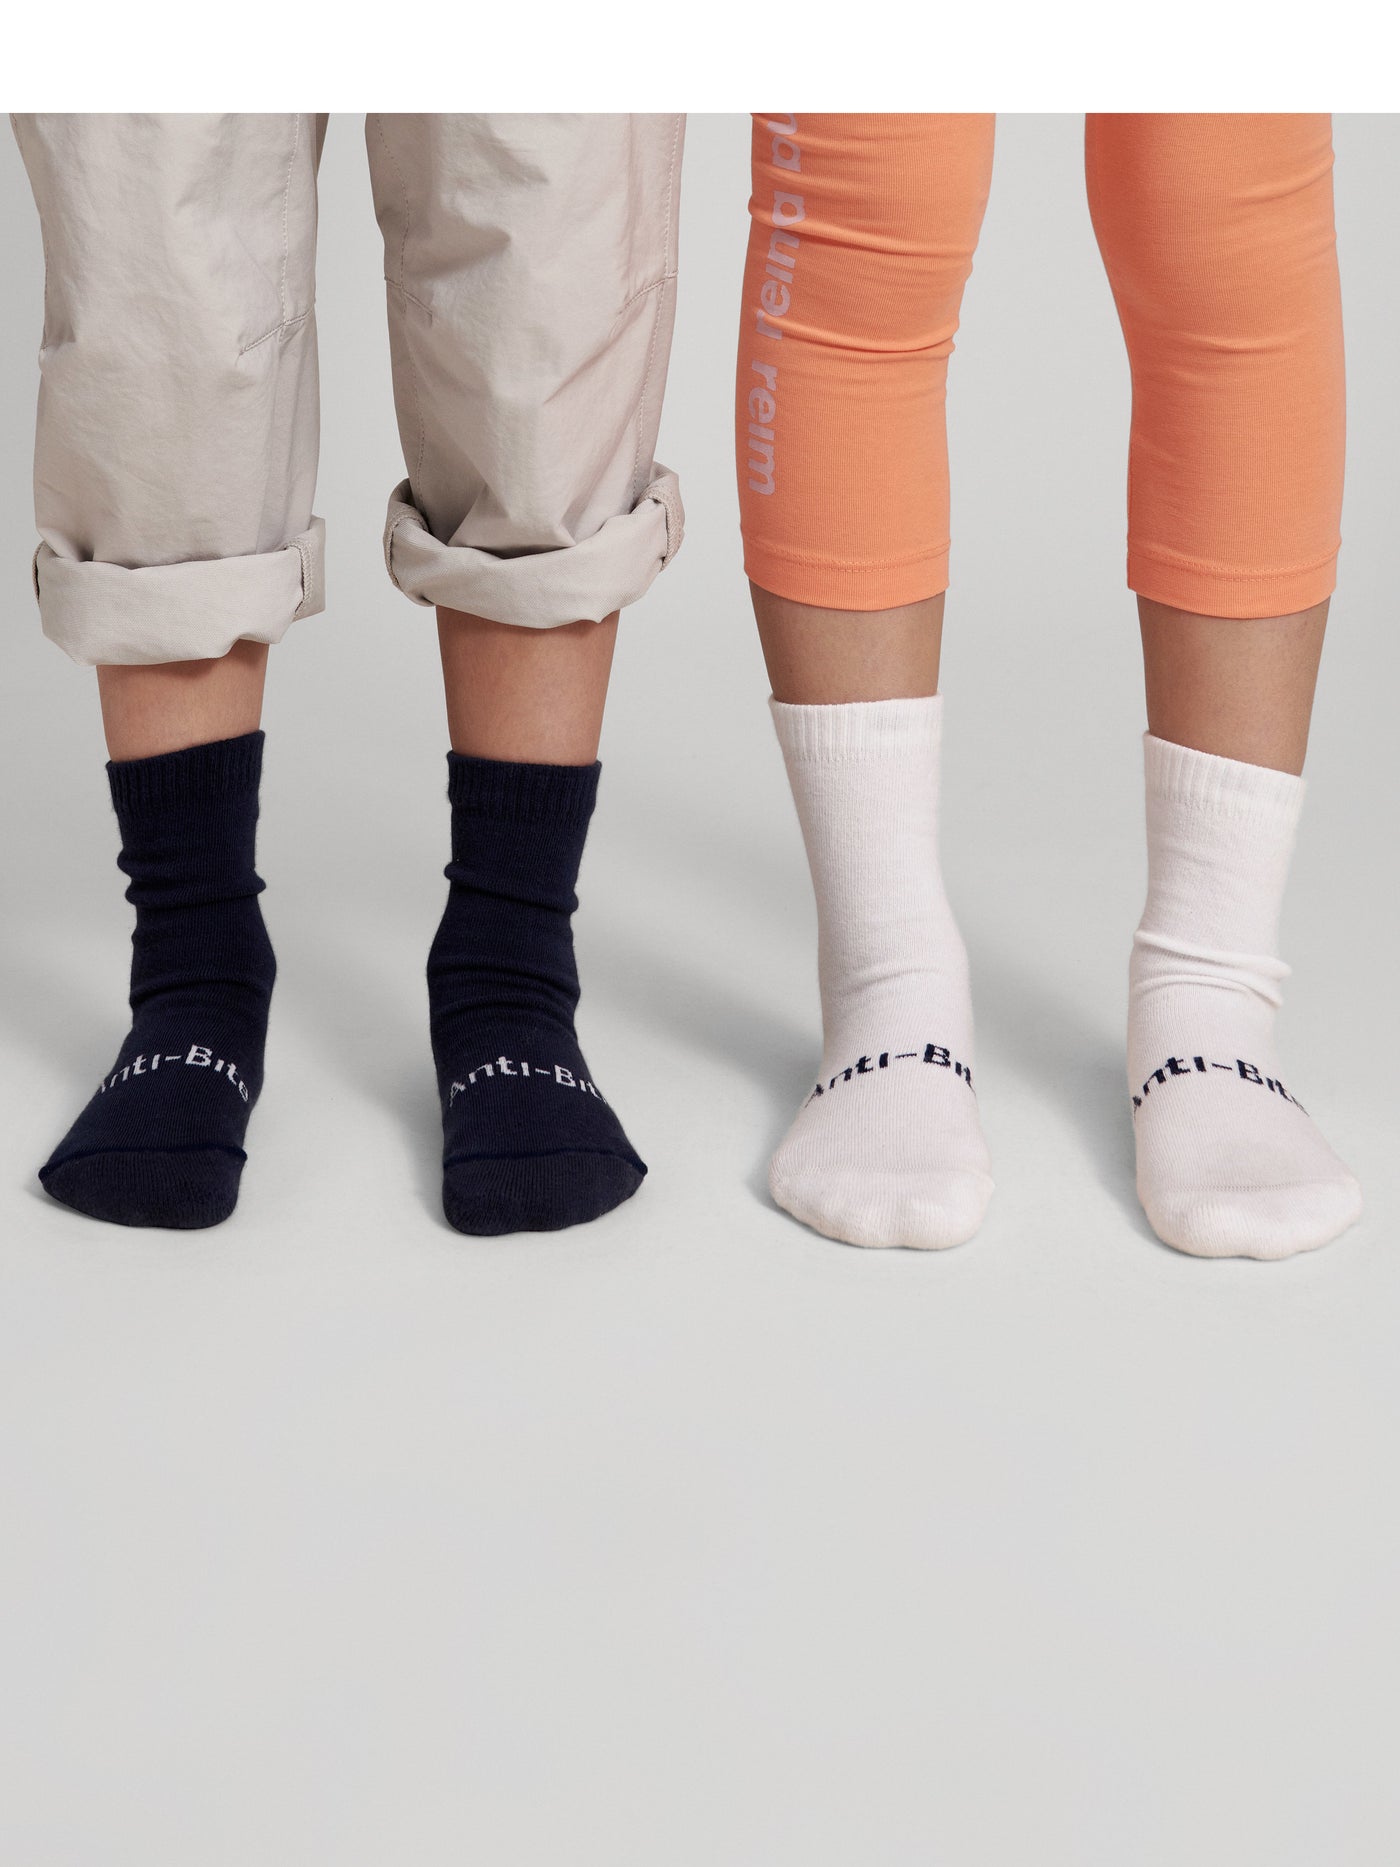 Reima lasten AntiBite sukat värissä Navy ja White mallin päällä